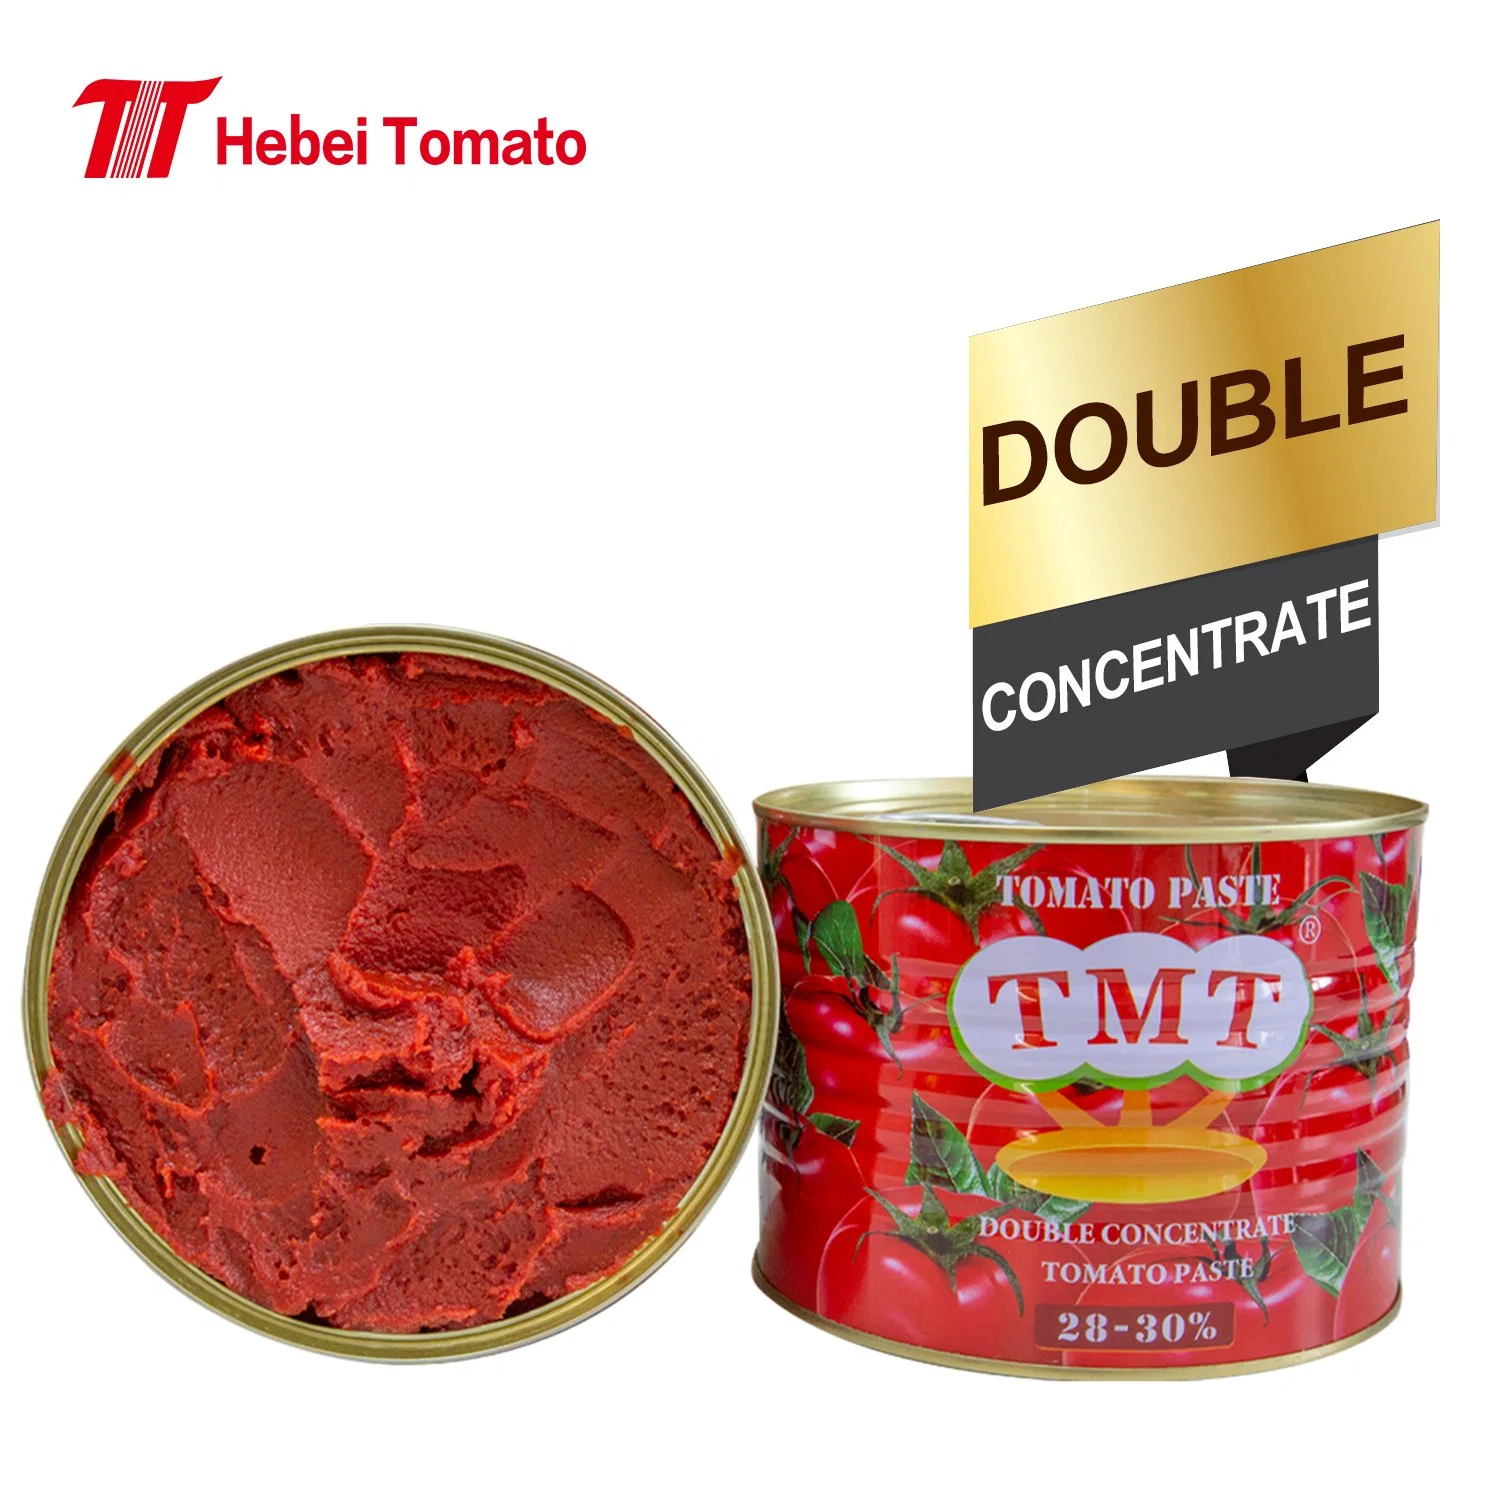 فتح بالجملة وبسهولة 210 غ من الطماطم المعلبة لصق مع أفضل سعر